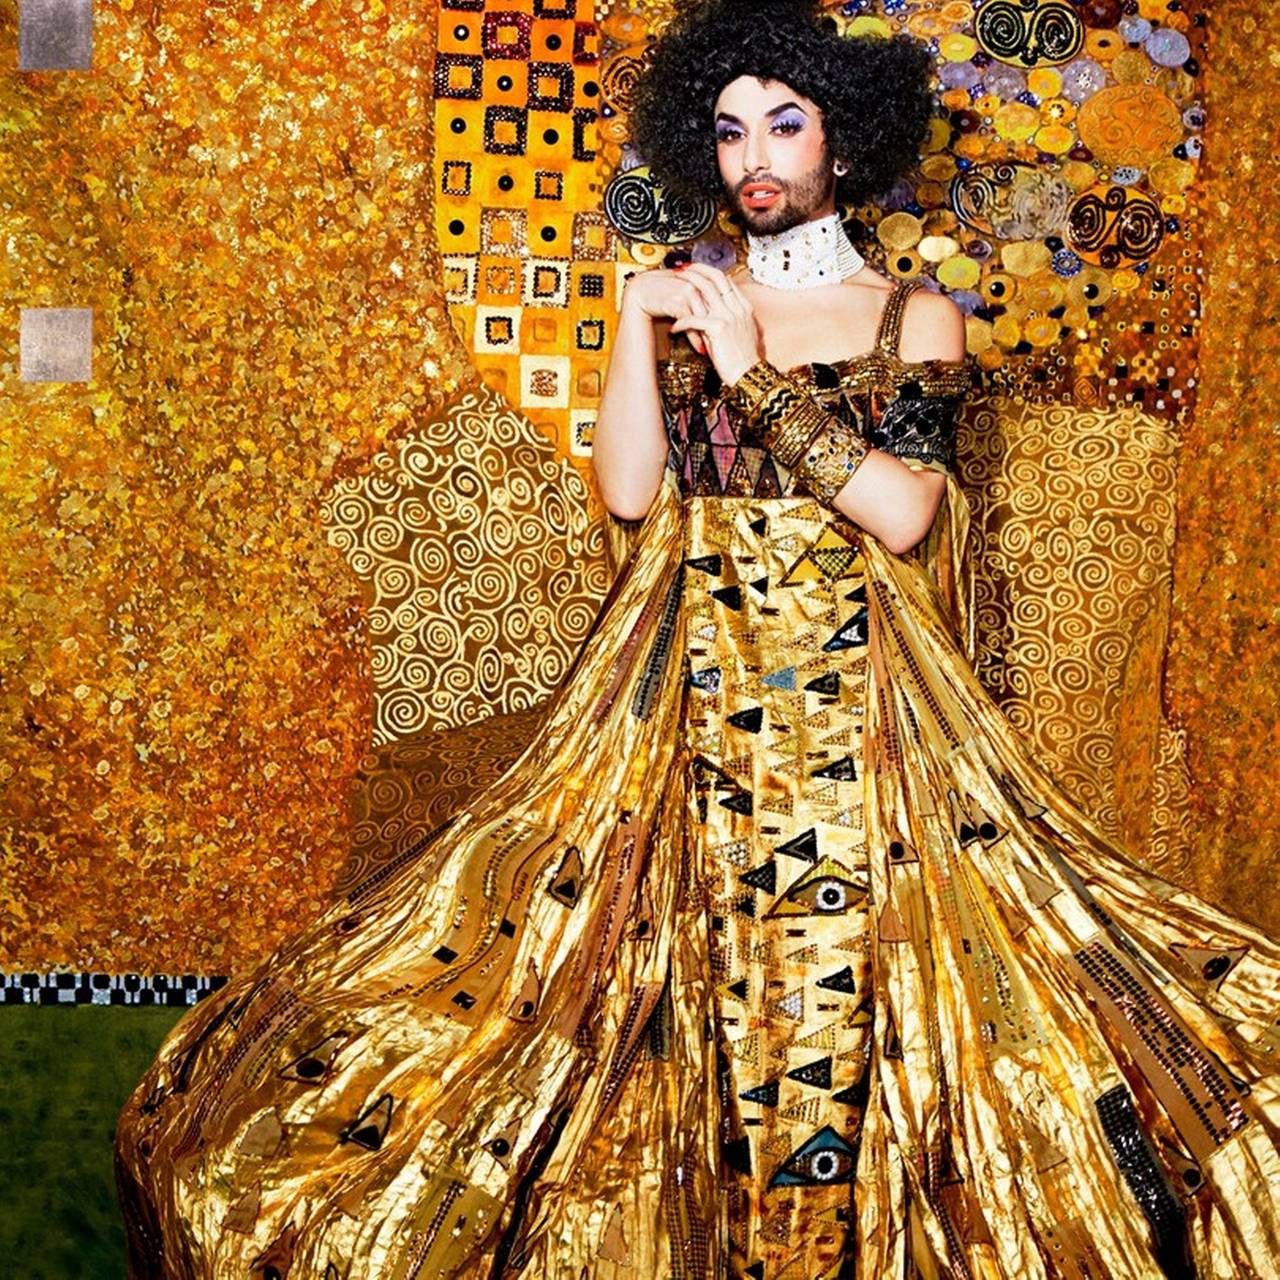 Chef-d'œuvre de l'Art nouveau, la "Goldene Adele" de Gustav Klimt interprétée avec un portrait de la chanteuse autrichienne et drag queen Conchita.

PREISS FINE ARTS est l'une des principales galeries de photographie d'art au monde, représentant les